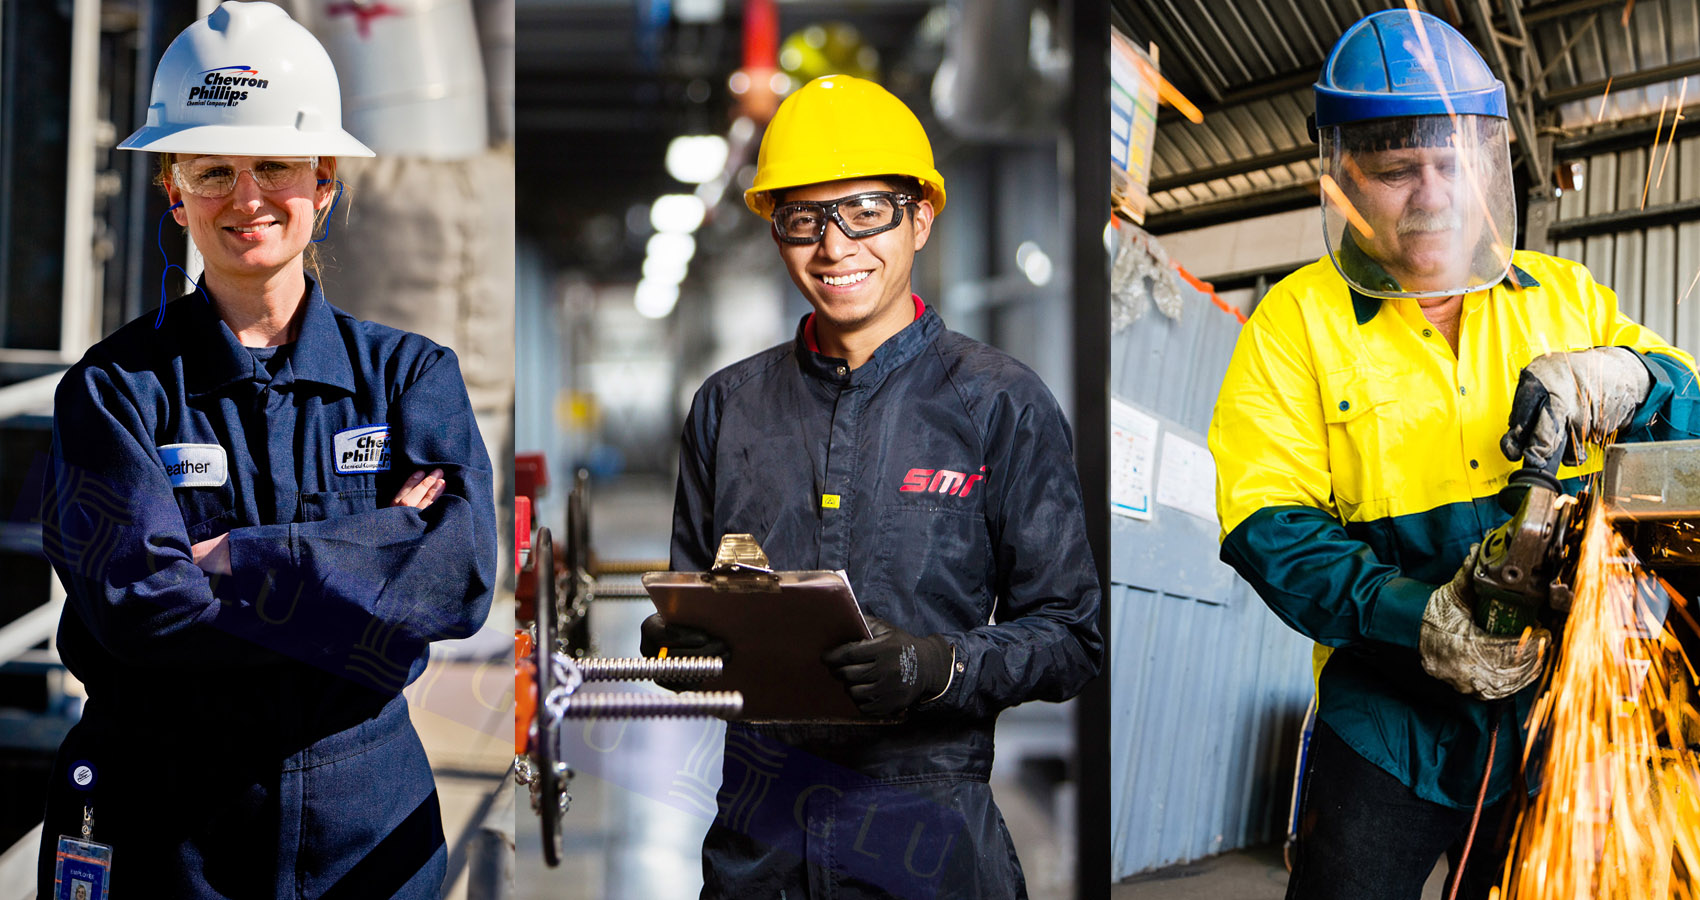 Đồng phục bảo hộ lao động thể hiện sự chuyên nghiệp của doanh nghiệp, đồng thời mang đến sự an toàn cho công nhân lao động